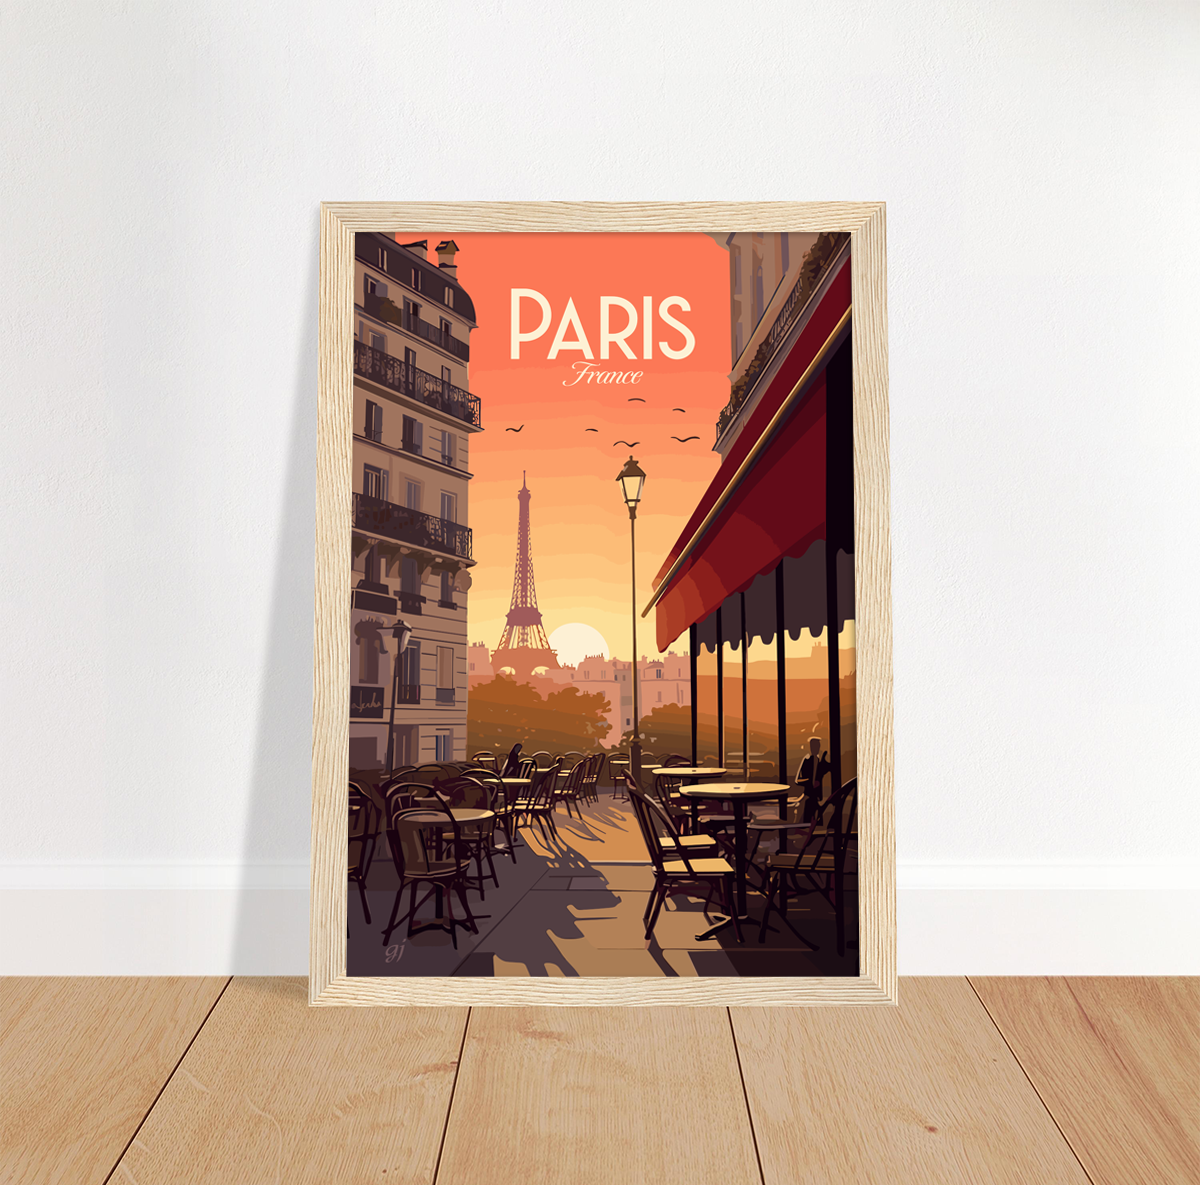 Paris - Café poster by bon voyage design